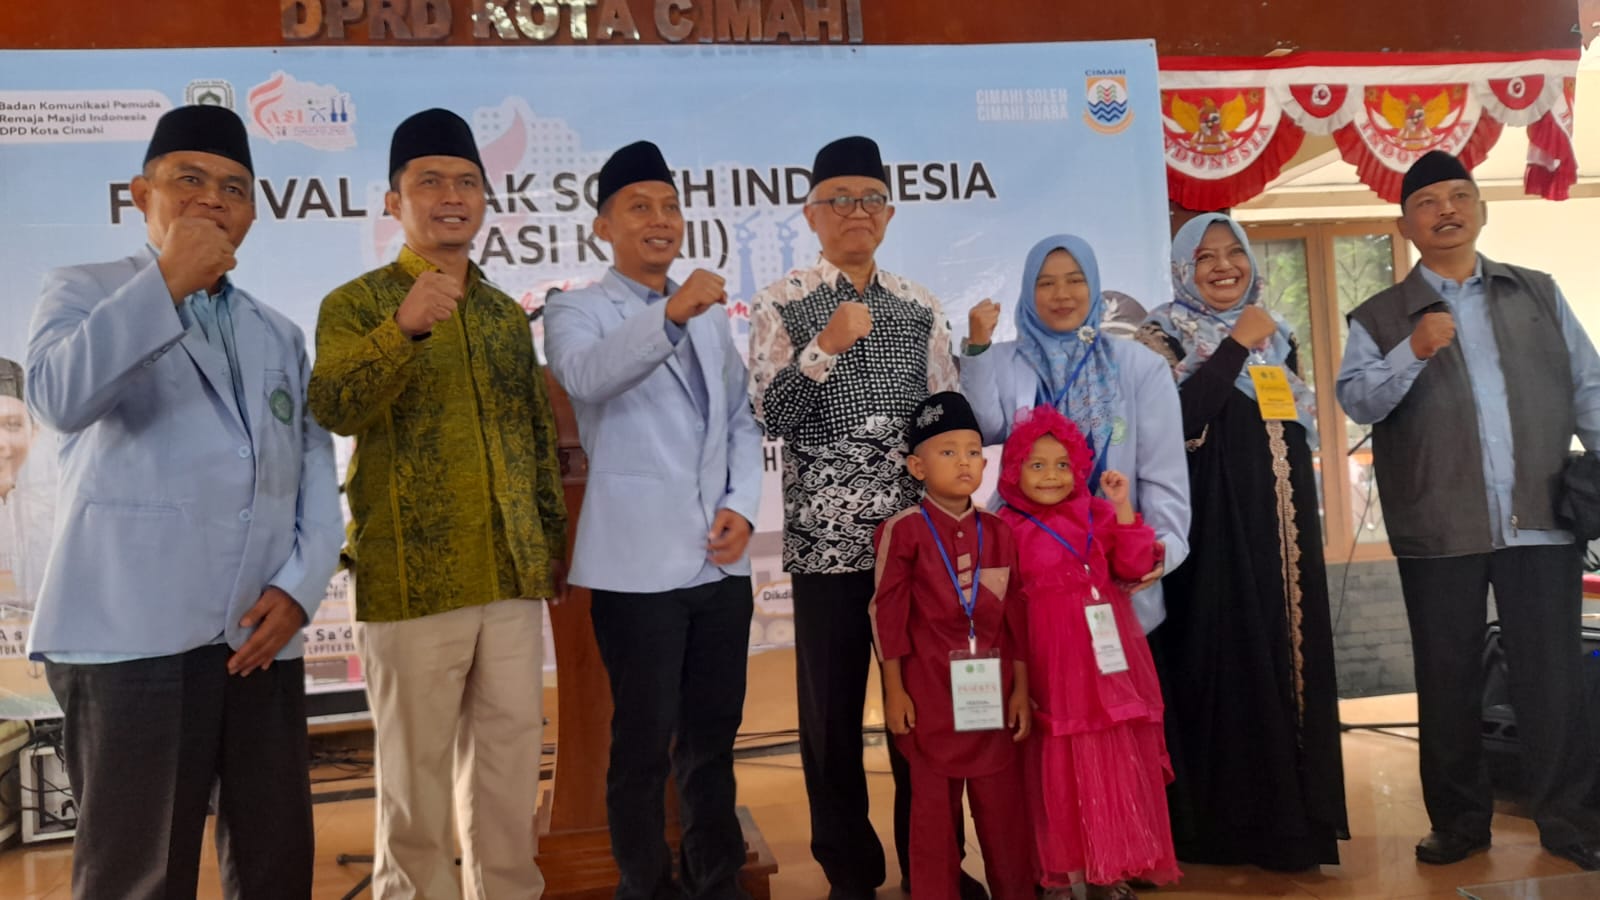 Doc. Festival Anak Soleh Indonesia (FASI) ke XII di Pendopo DPRD Kota Cimahi (istimewa)